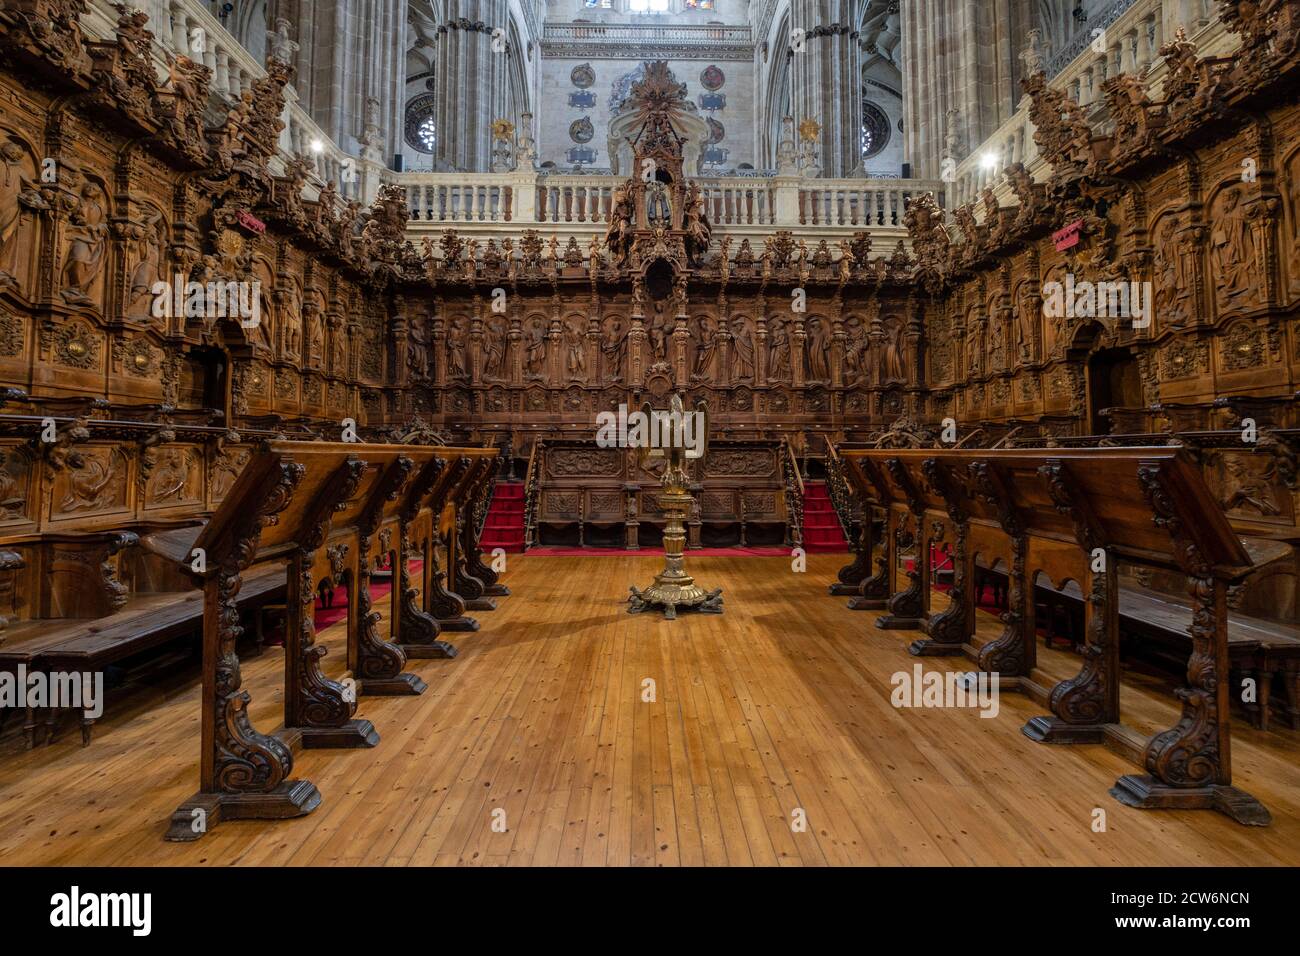 coro, Catedral de la Asunción de la Virgen, Salamanca, comunidad Autónoma de Castilla y León, España Foto de stock